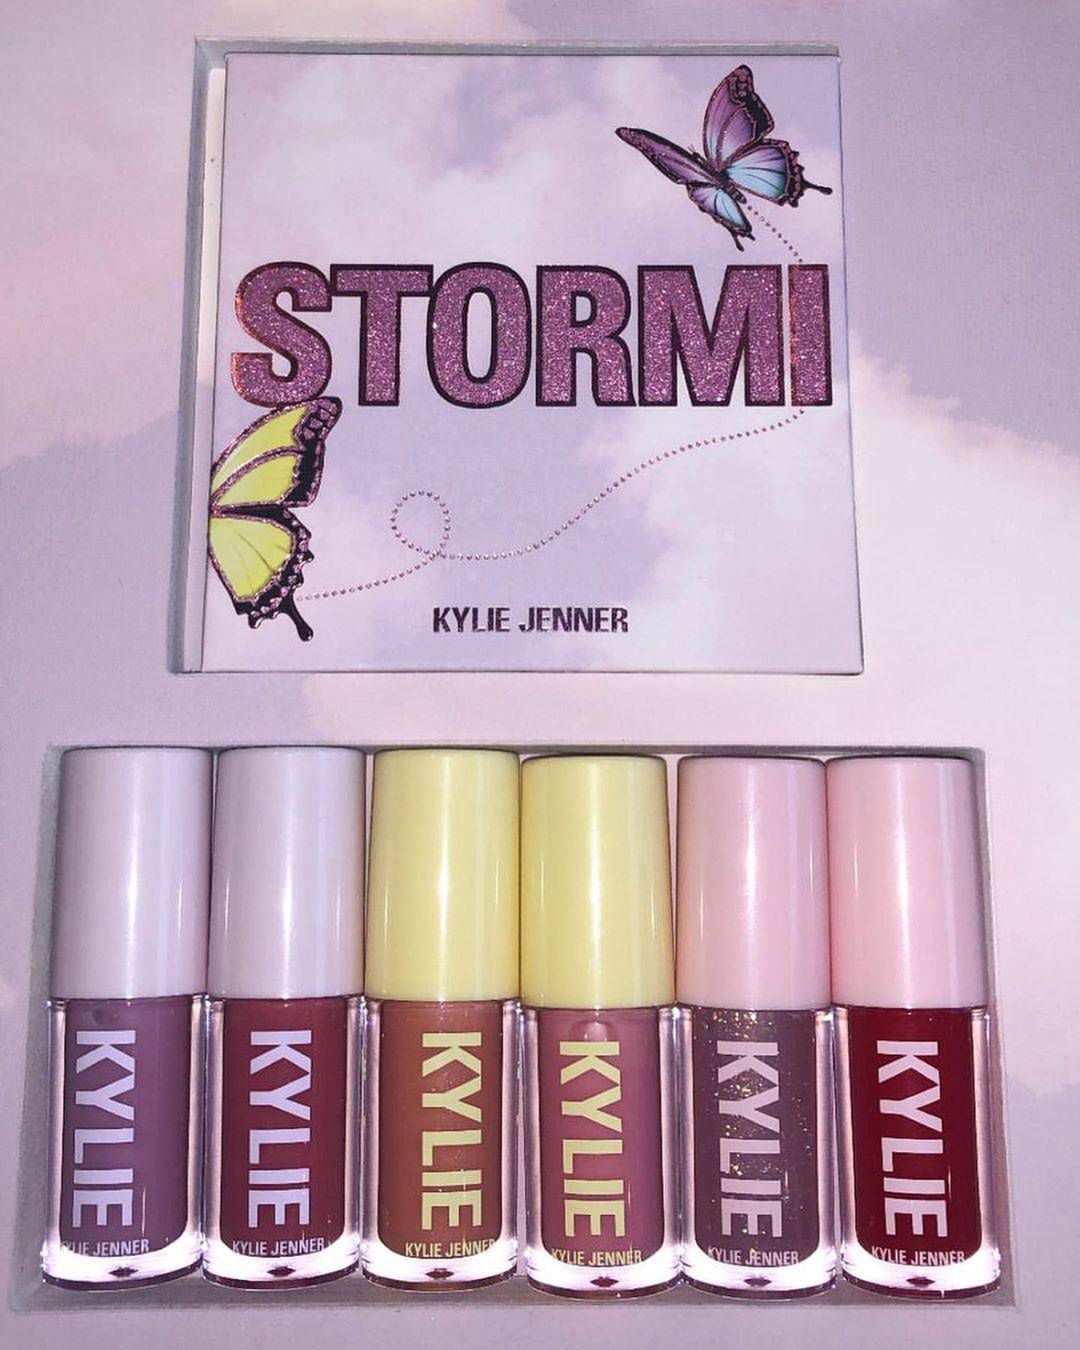 Kosmetyki Stormi, Instagram